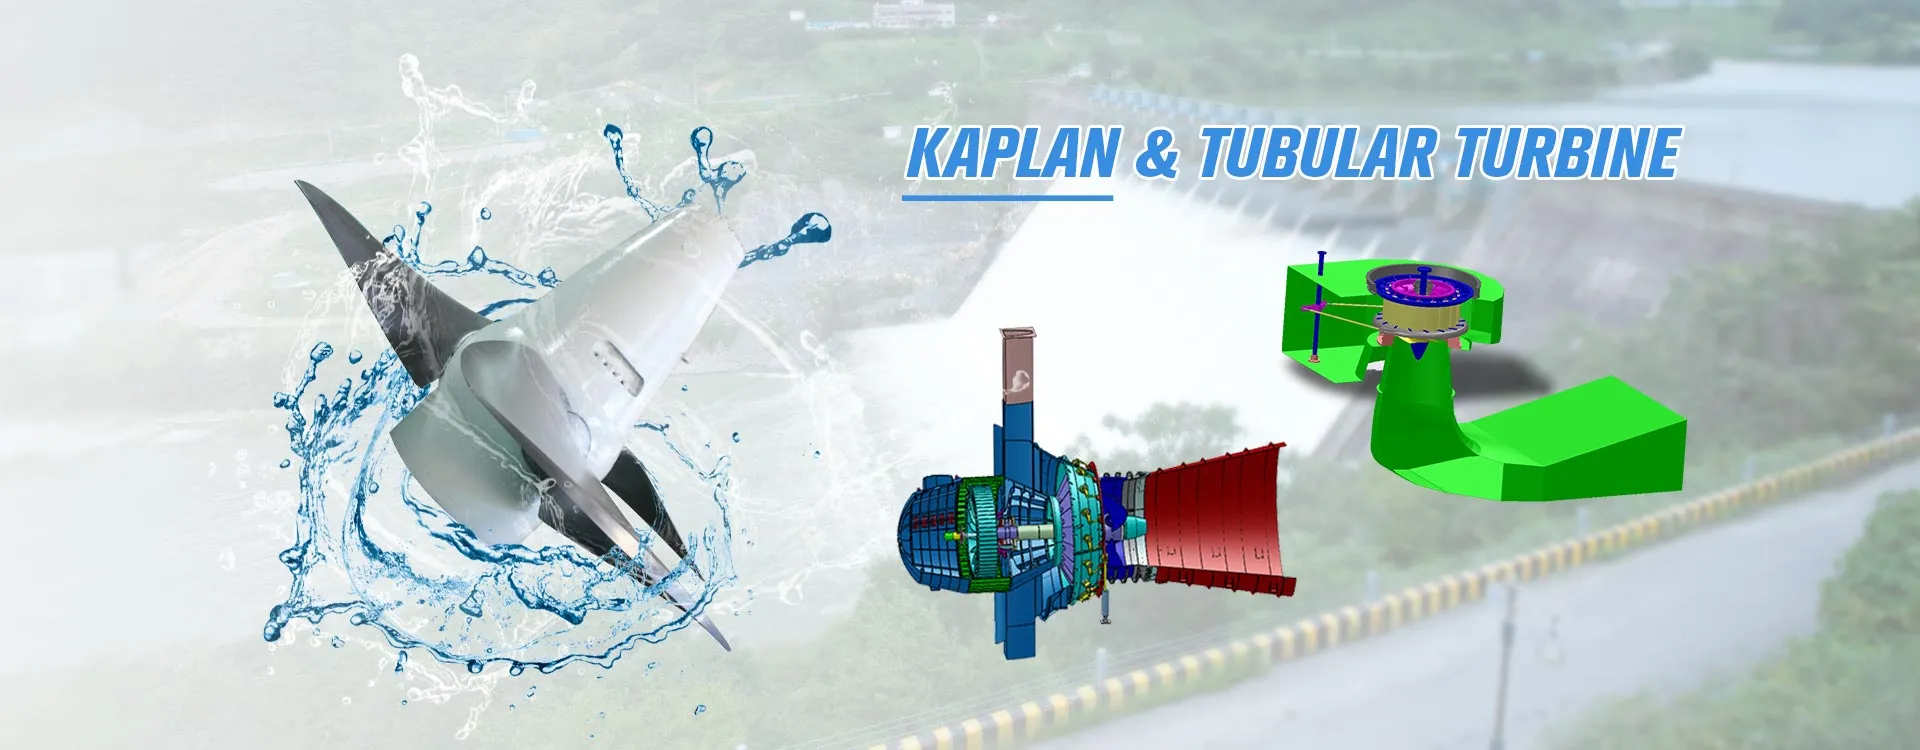 Turbina Kaplan y Tubular